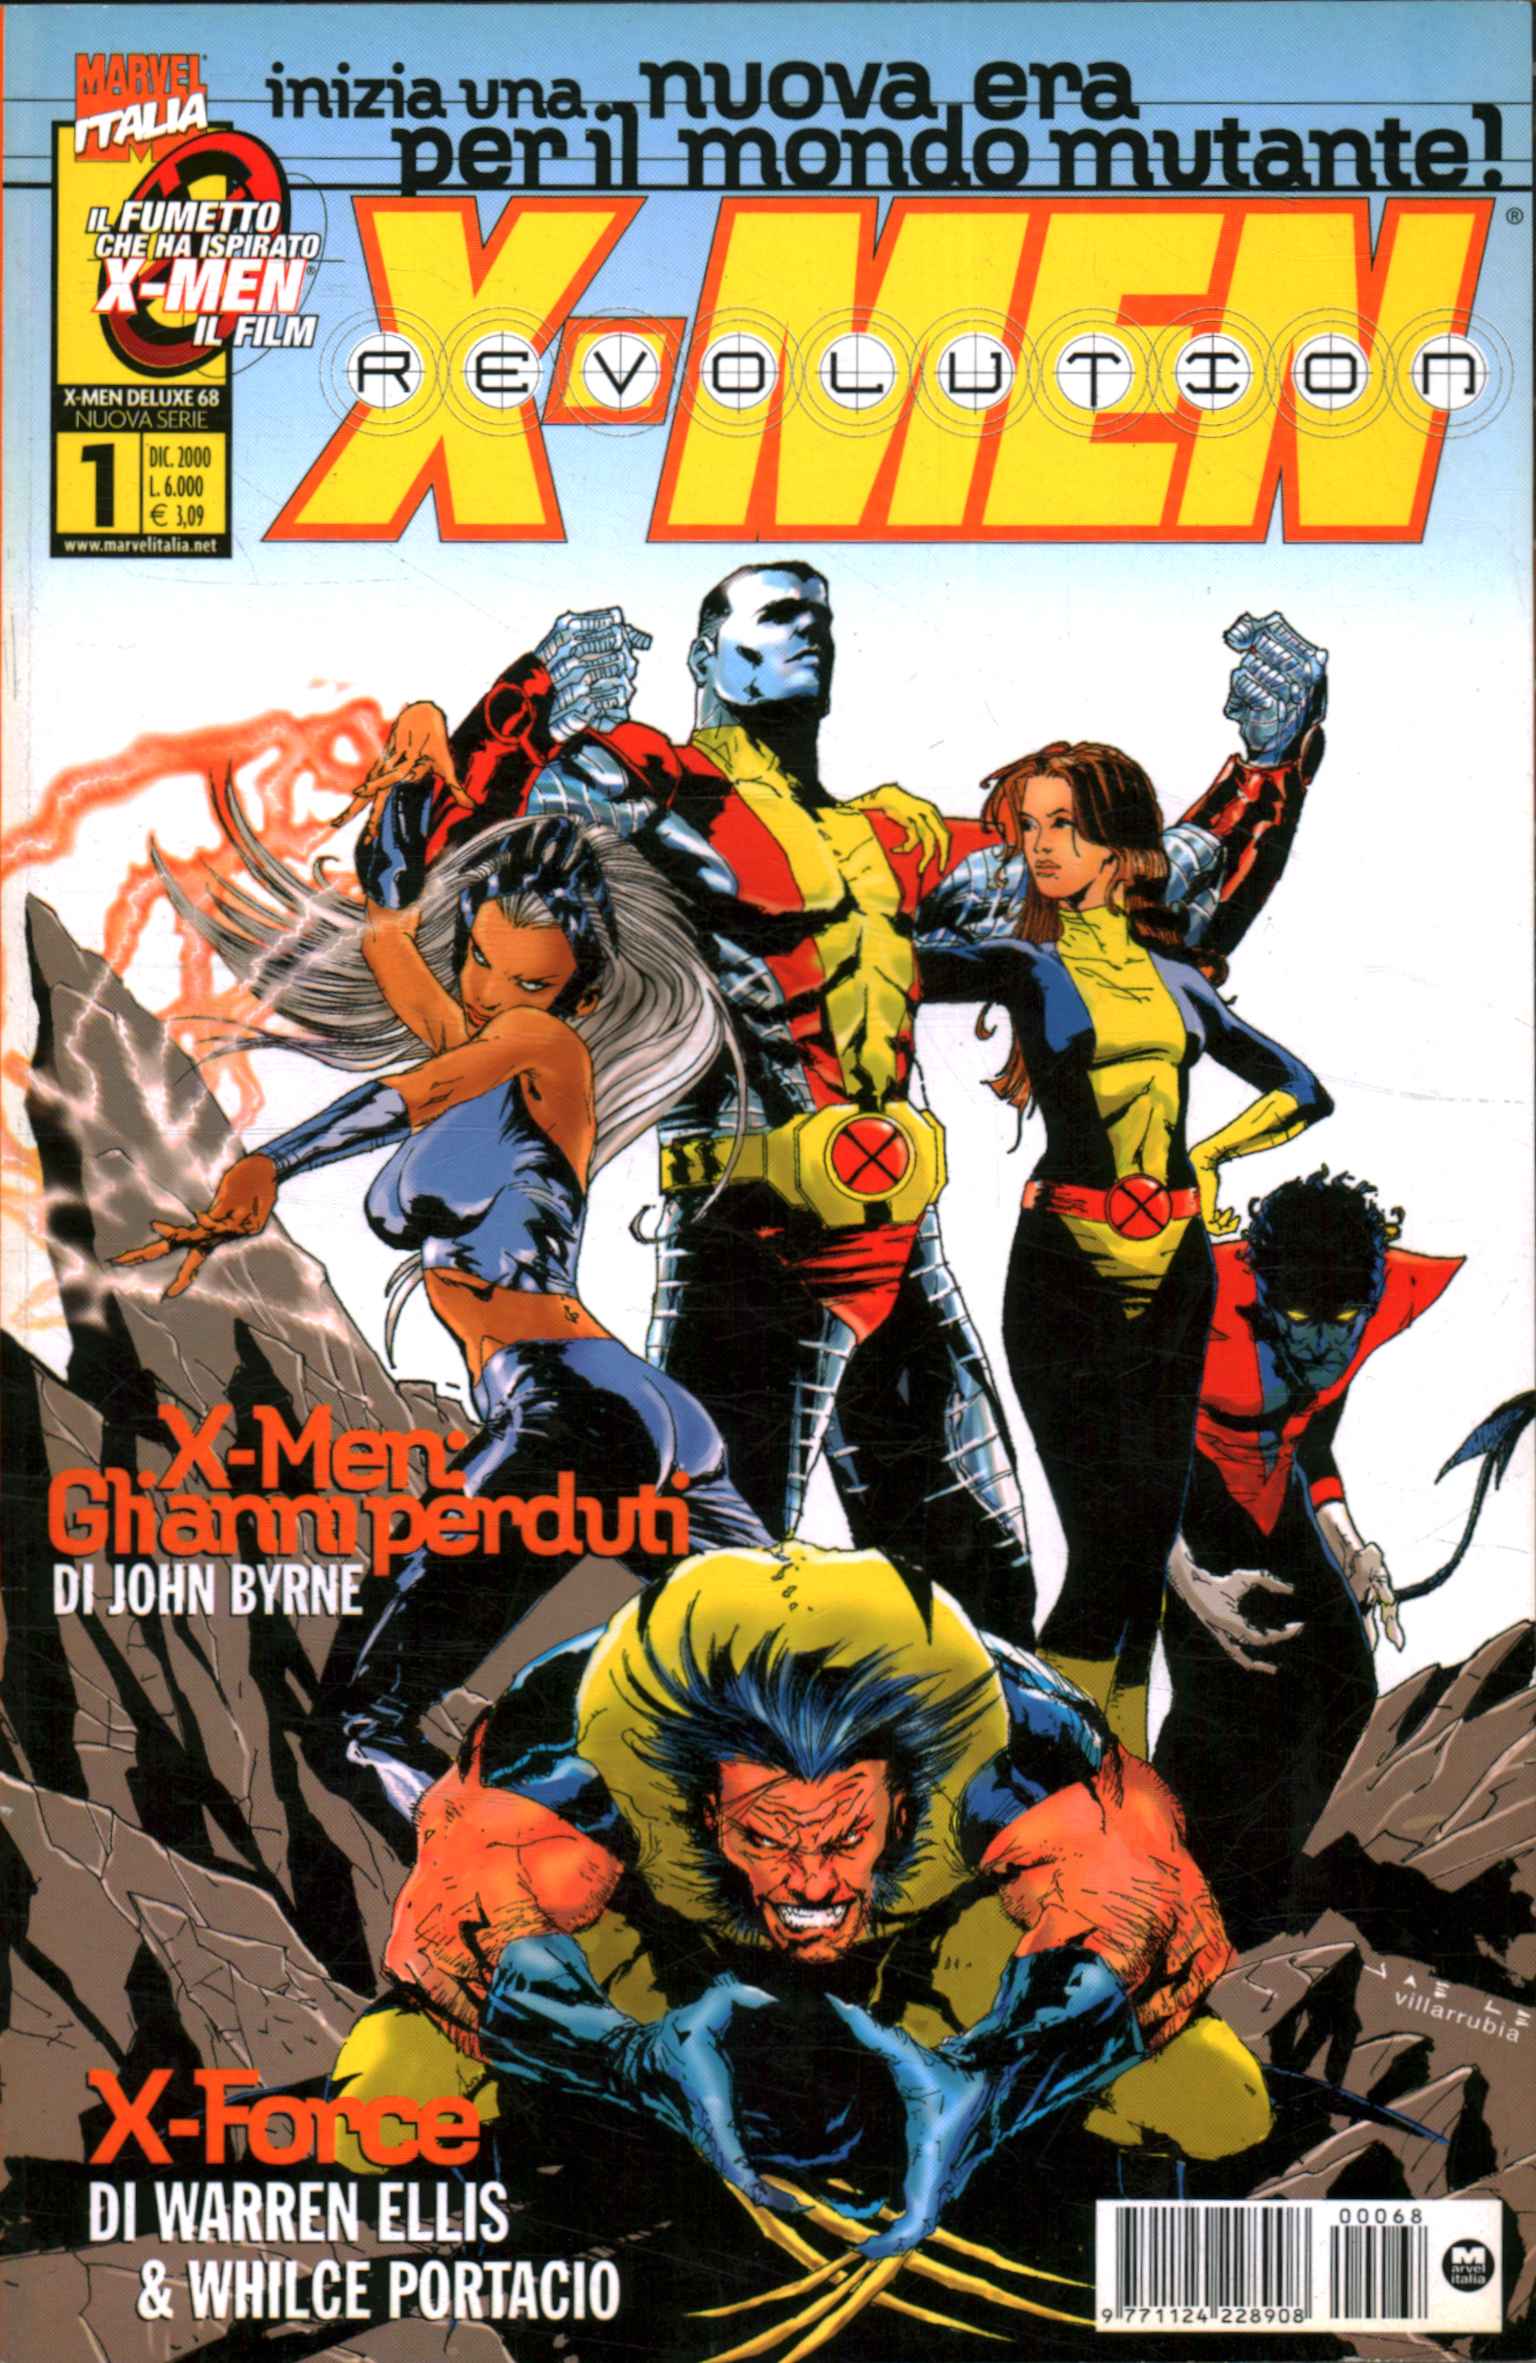 X-Men-Revolution. Komplette Serie (16 Bd